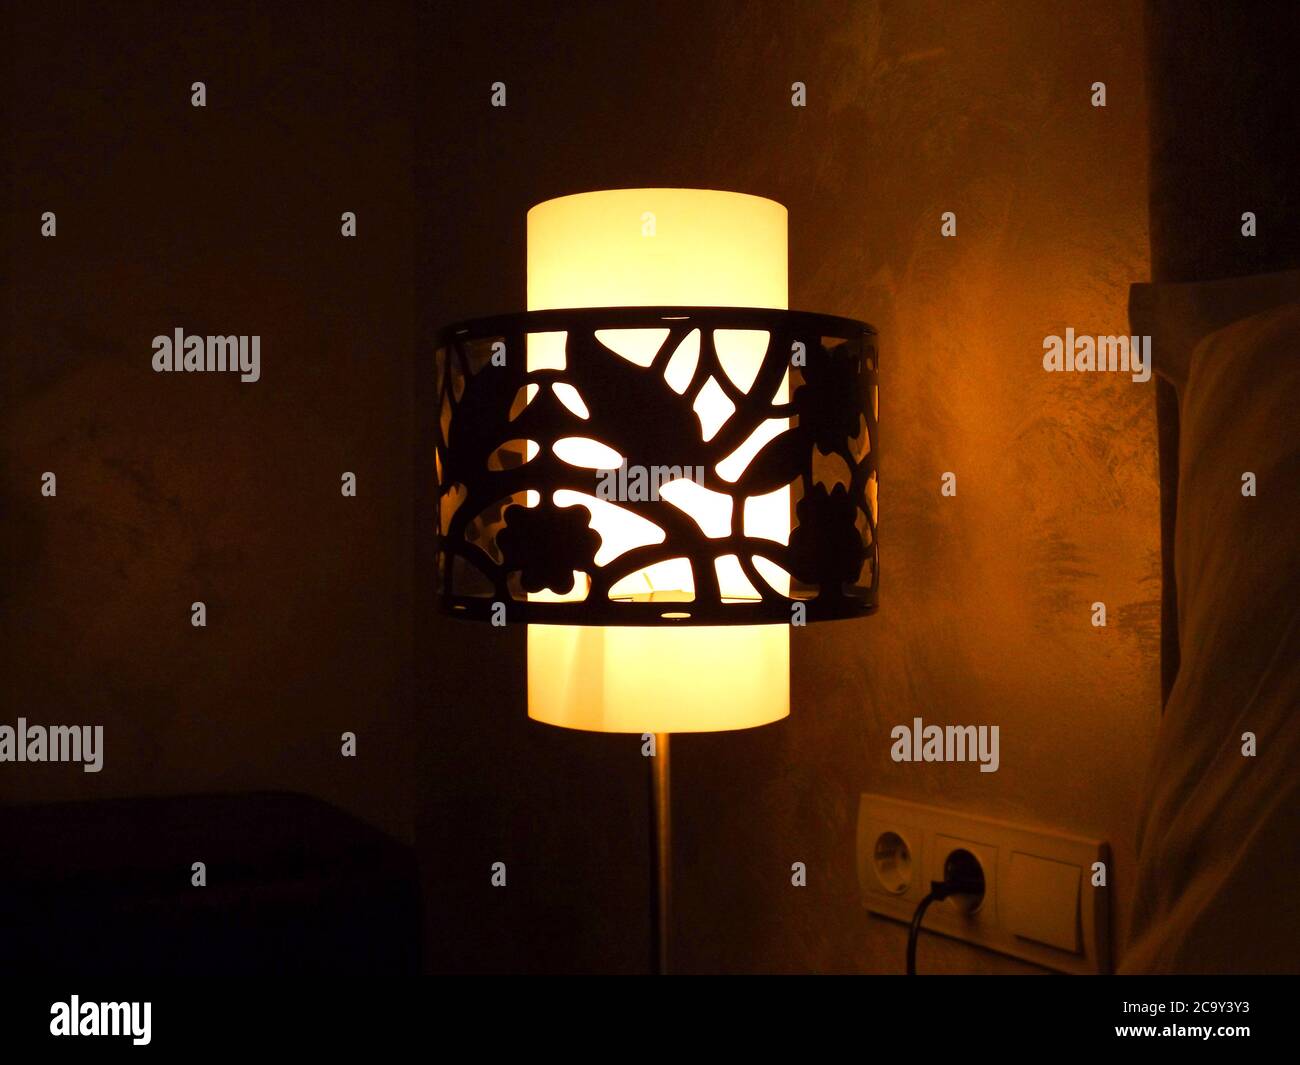 Imagen de una lámpara de noche que emite una luz suave en la habitación. Foto de stock